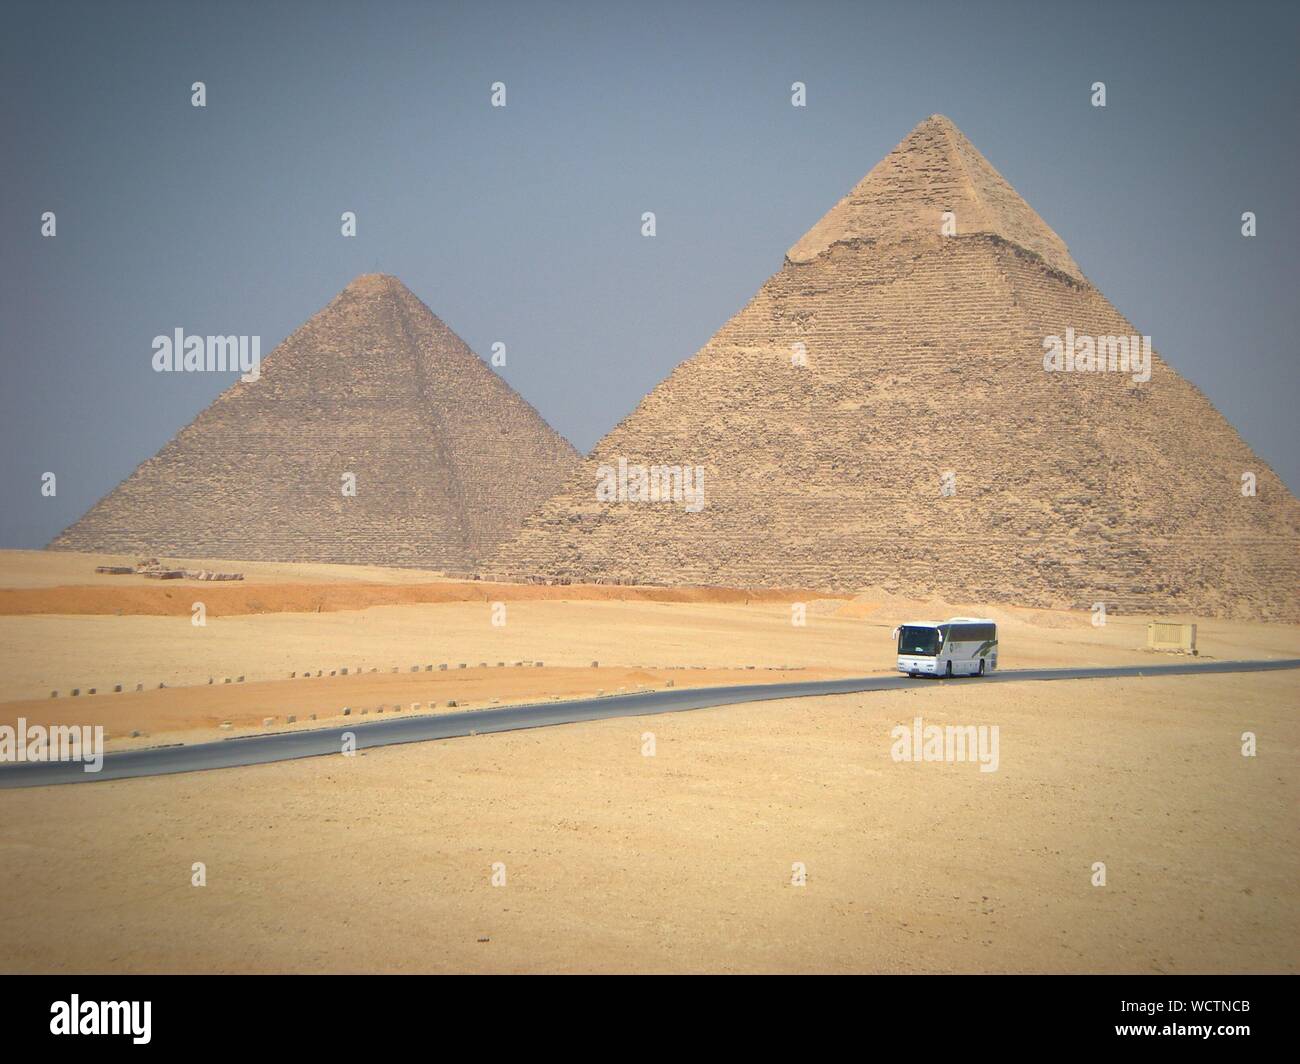 Pyramid Of Chephren At Desert Against Sky Stock Photo